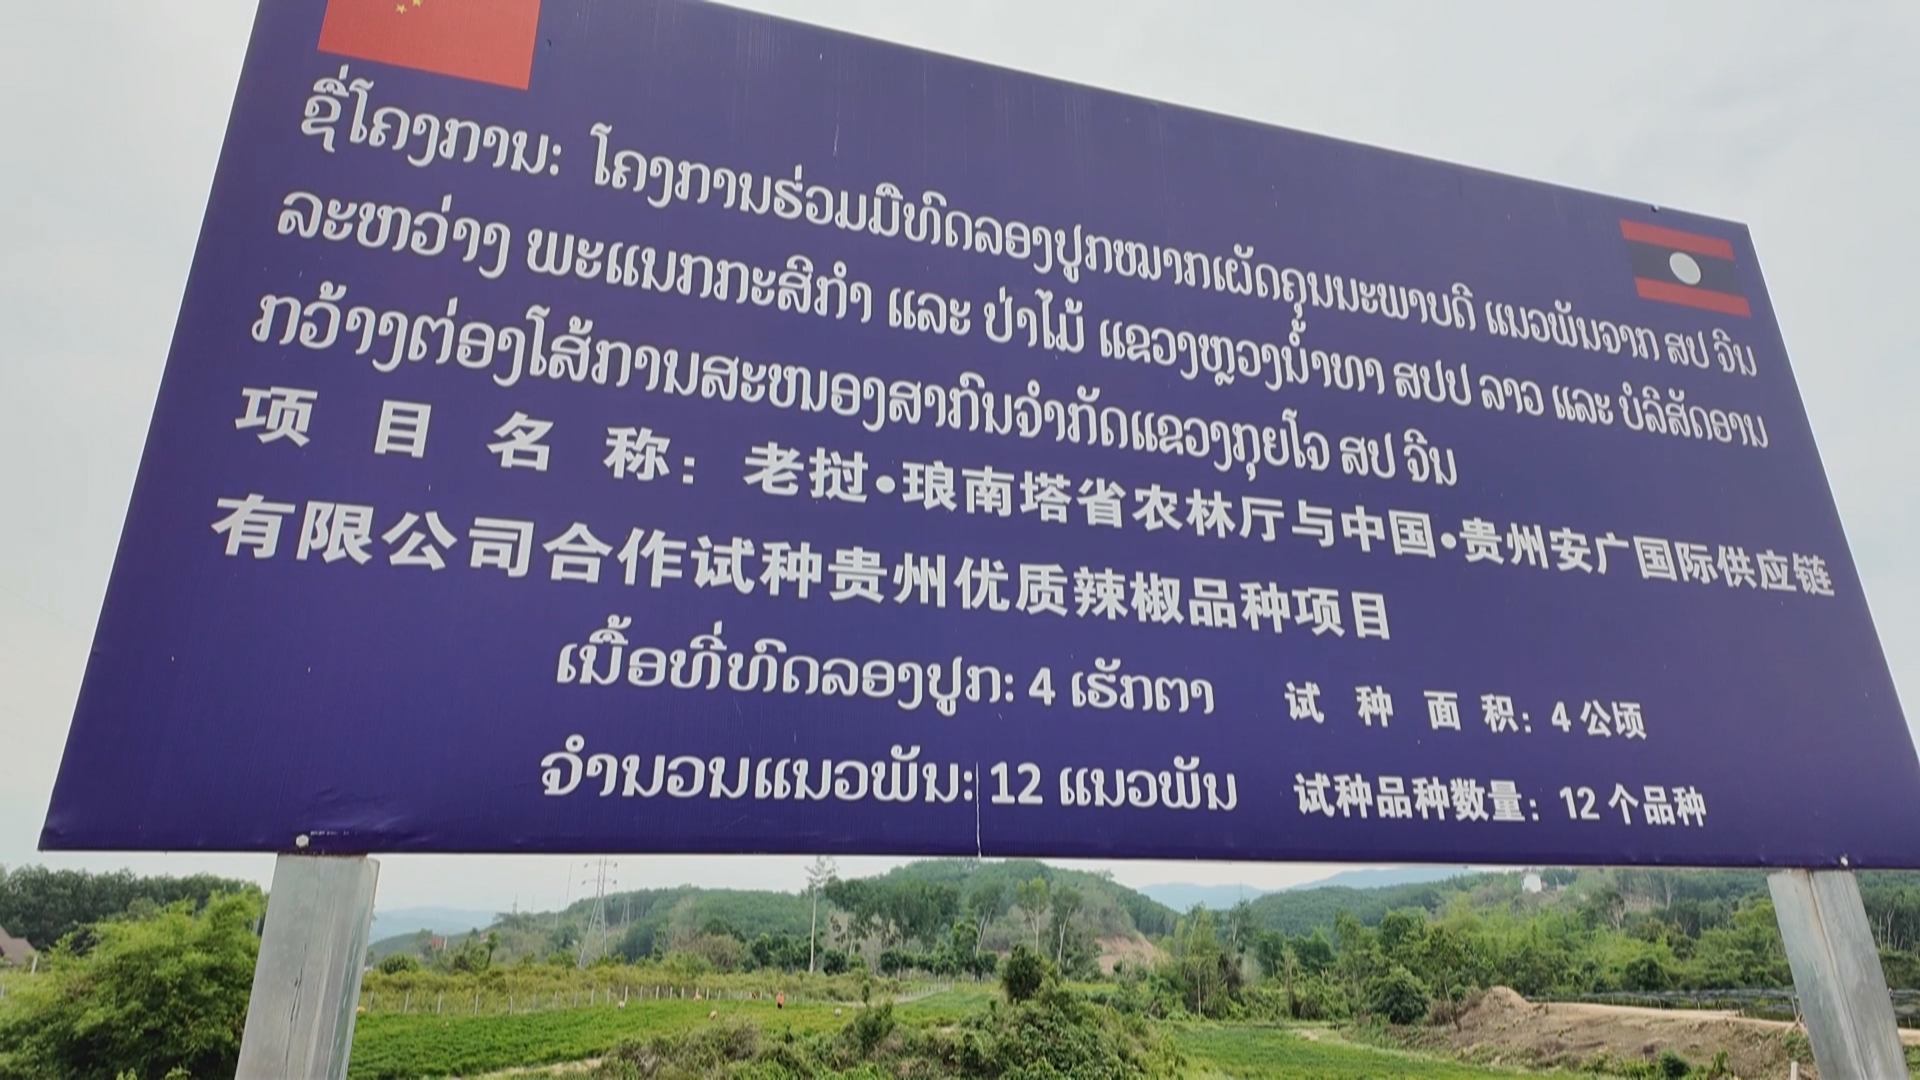 贵州新闻联播丨贵州辣椒在老挝喜获丰收 即将开启“跨国链”